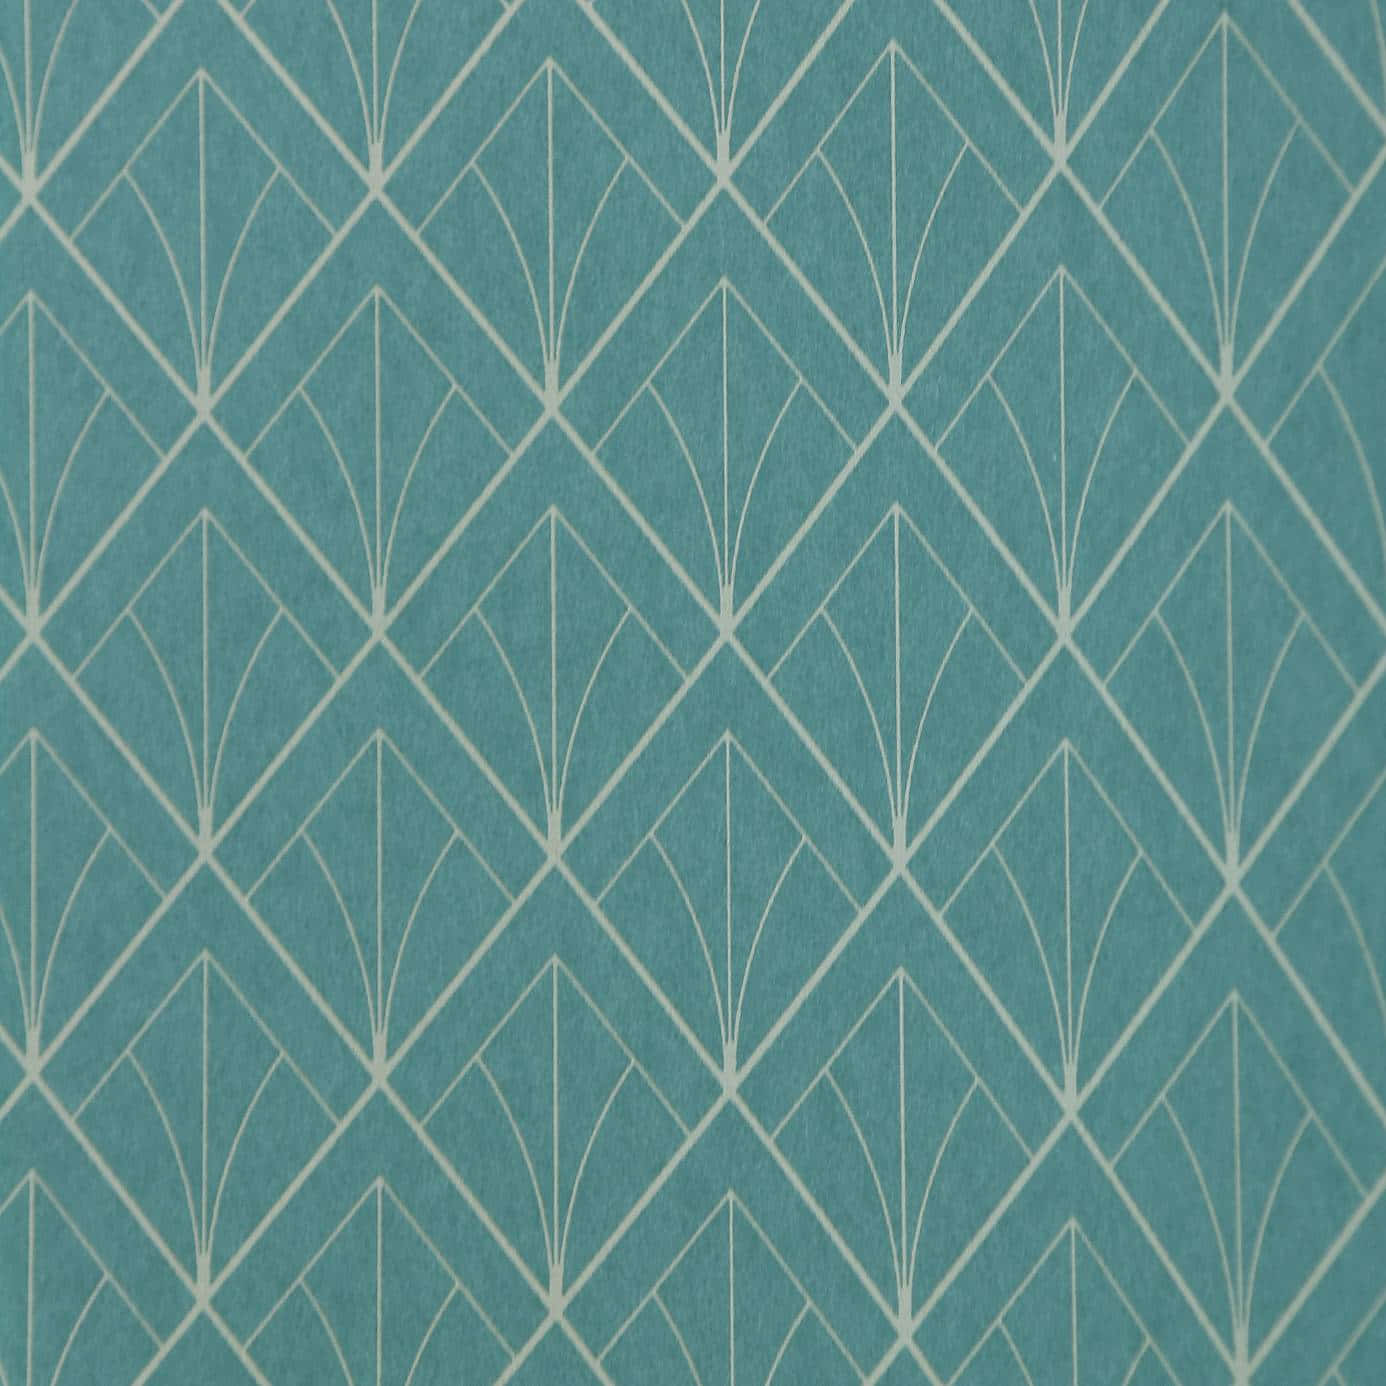 Einetürkis-weiße Tapete Mit Geometrischen Designs. Wallpaper